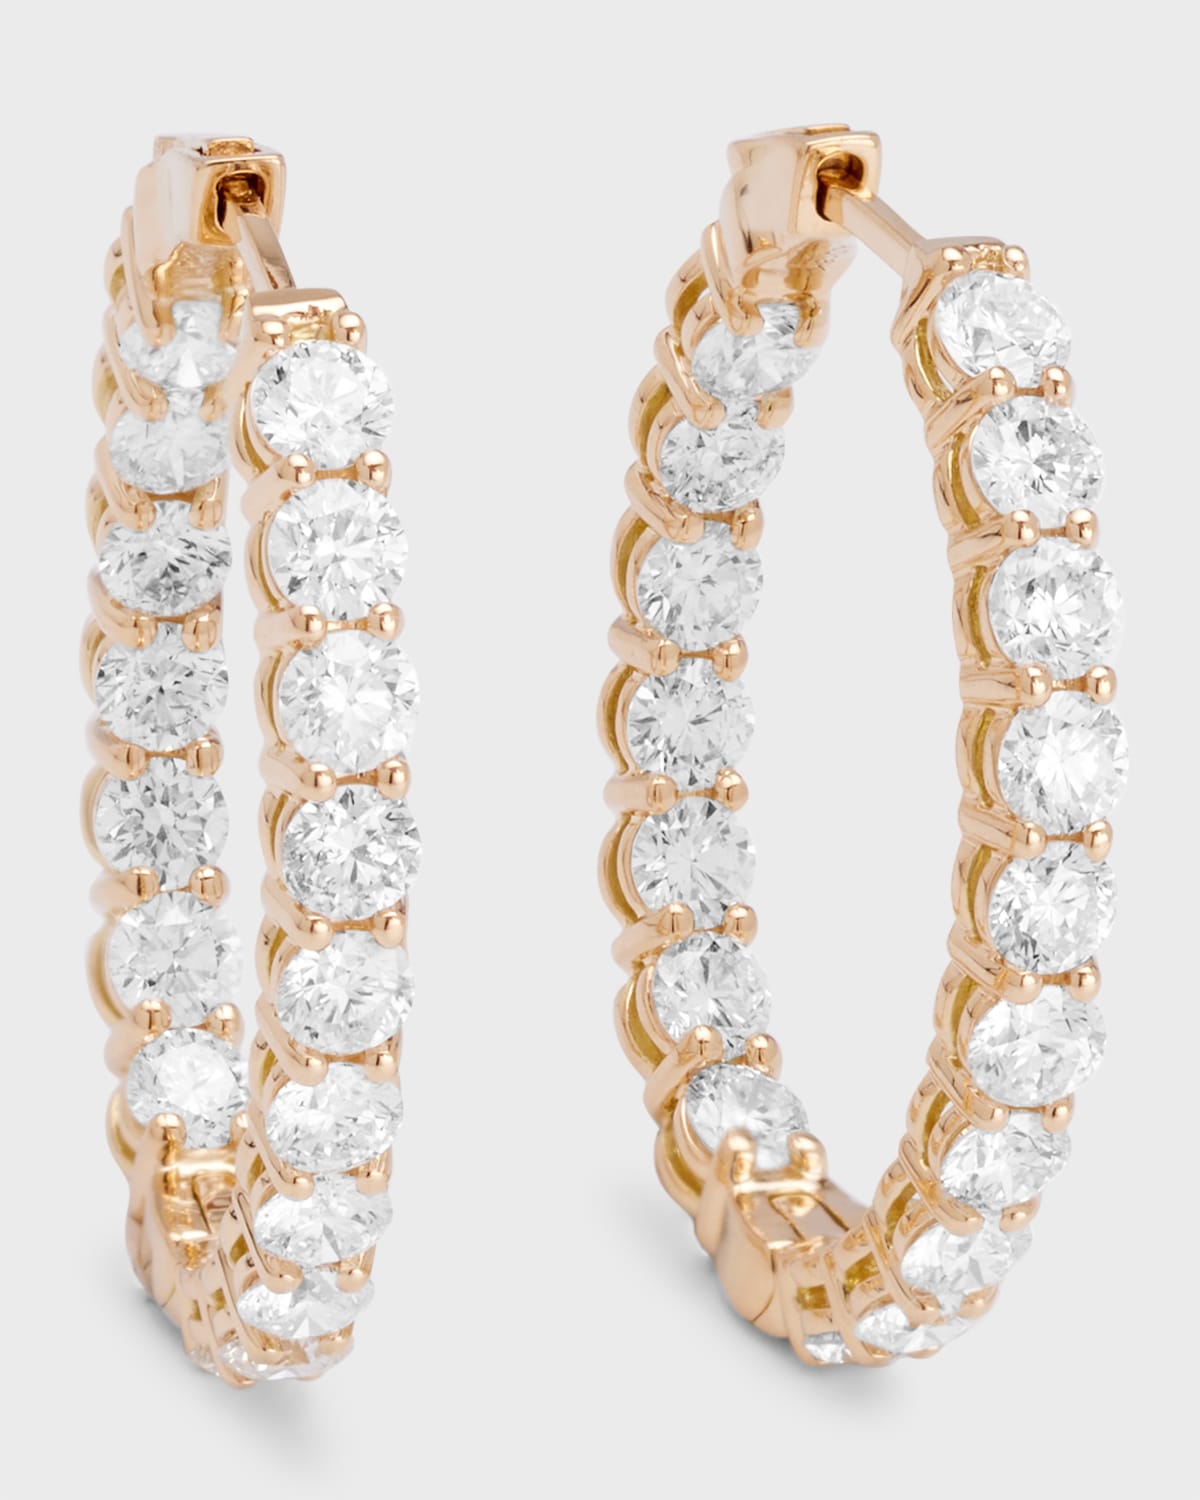 Neiman Marcus Diamonds 18k Yellow Gold Diamond Oval Hoop Earrings, 5.1tcw